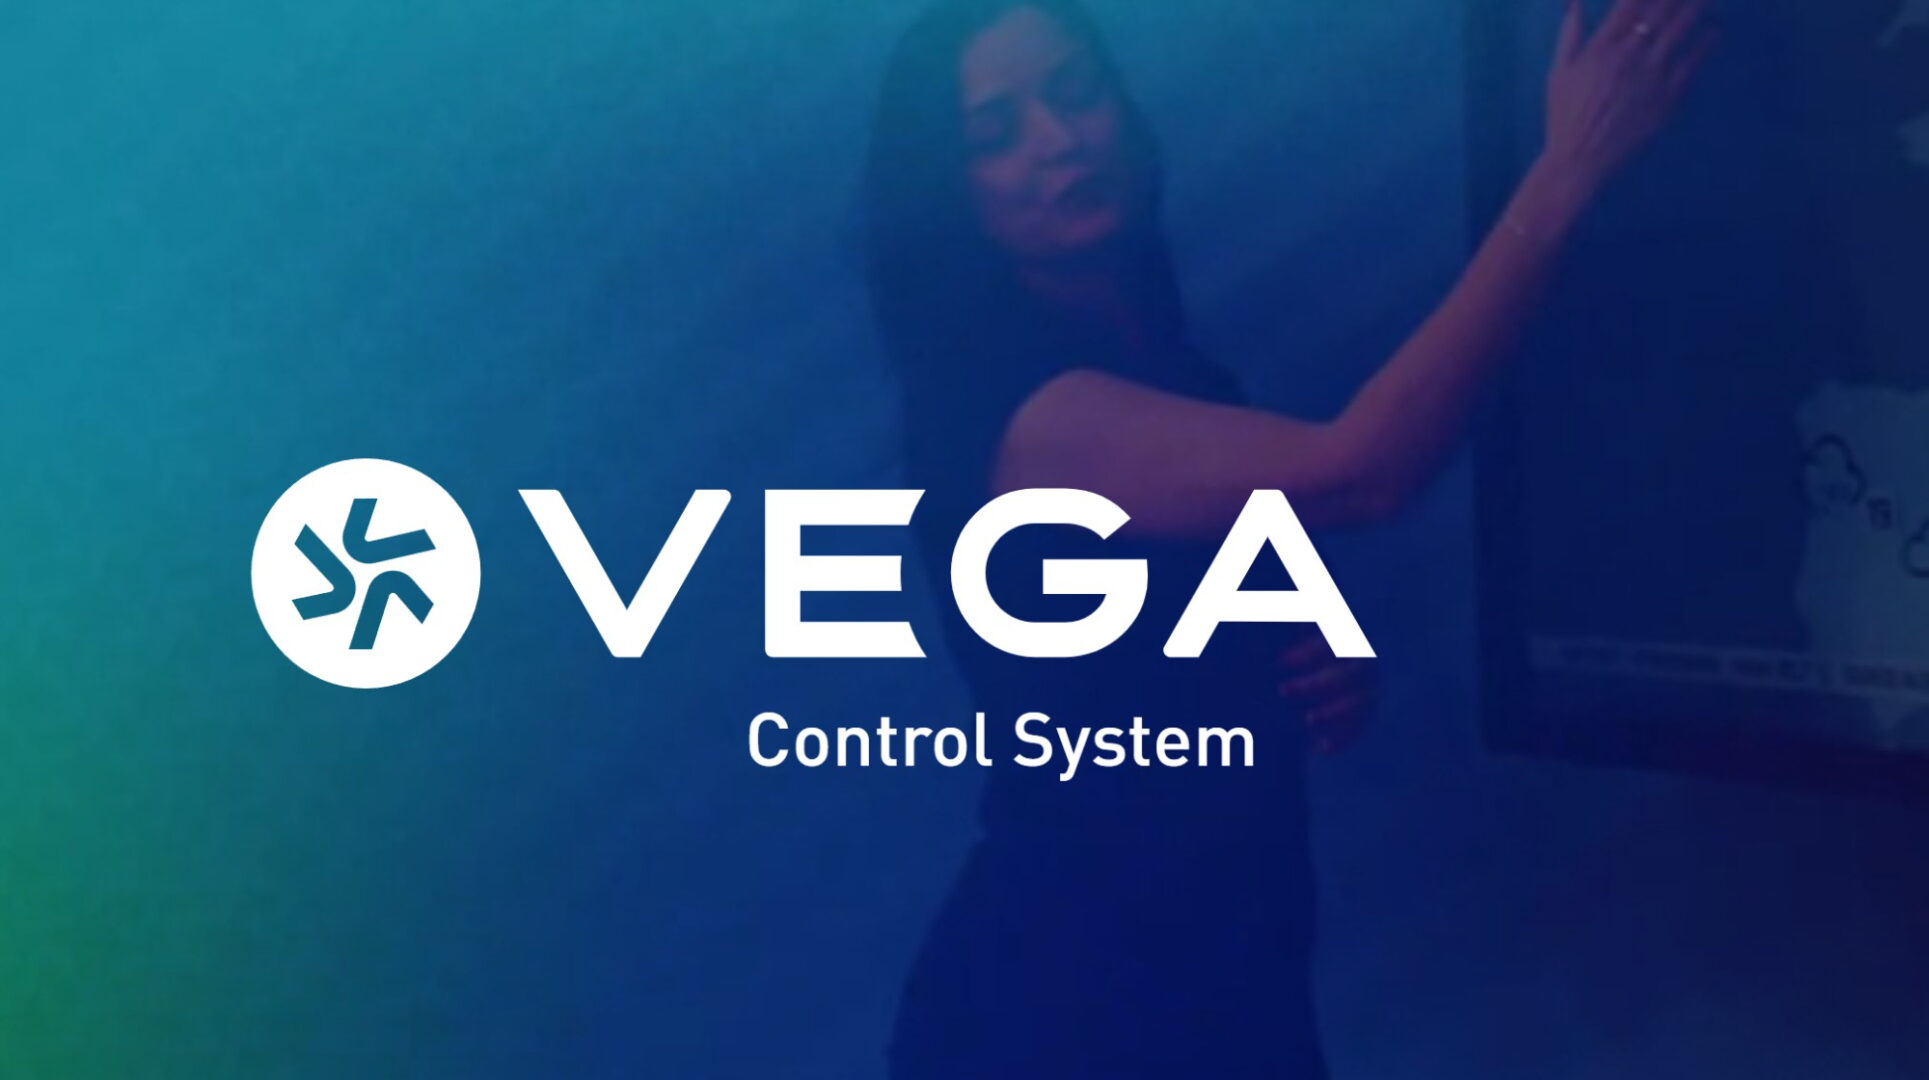 Vega fornisce un controllo creativo preciso che aiuta i team di produzione a creare un'identità visiva distintiva.